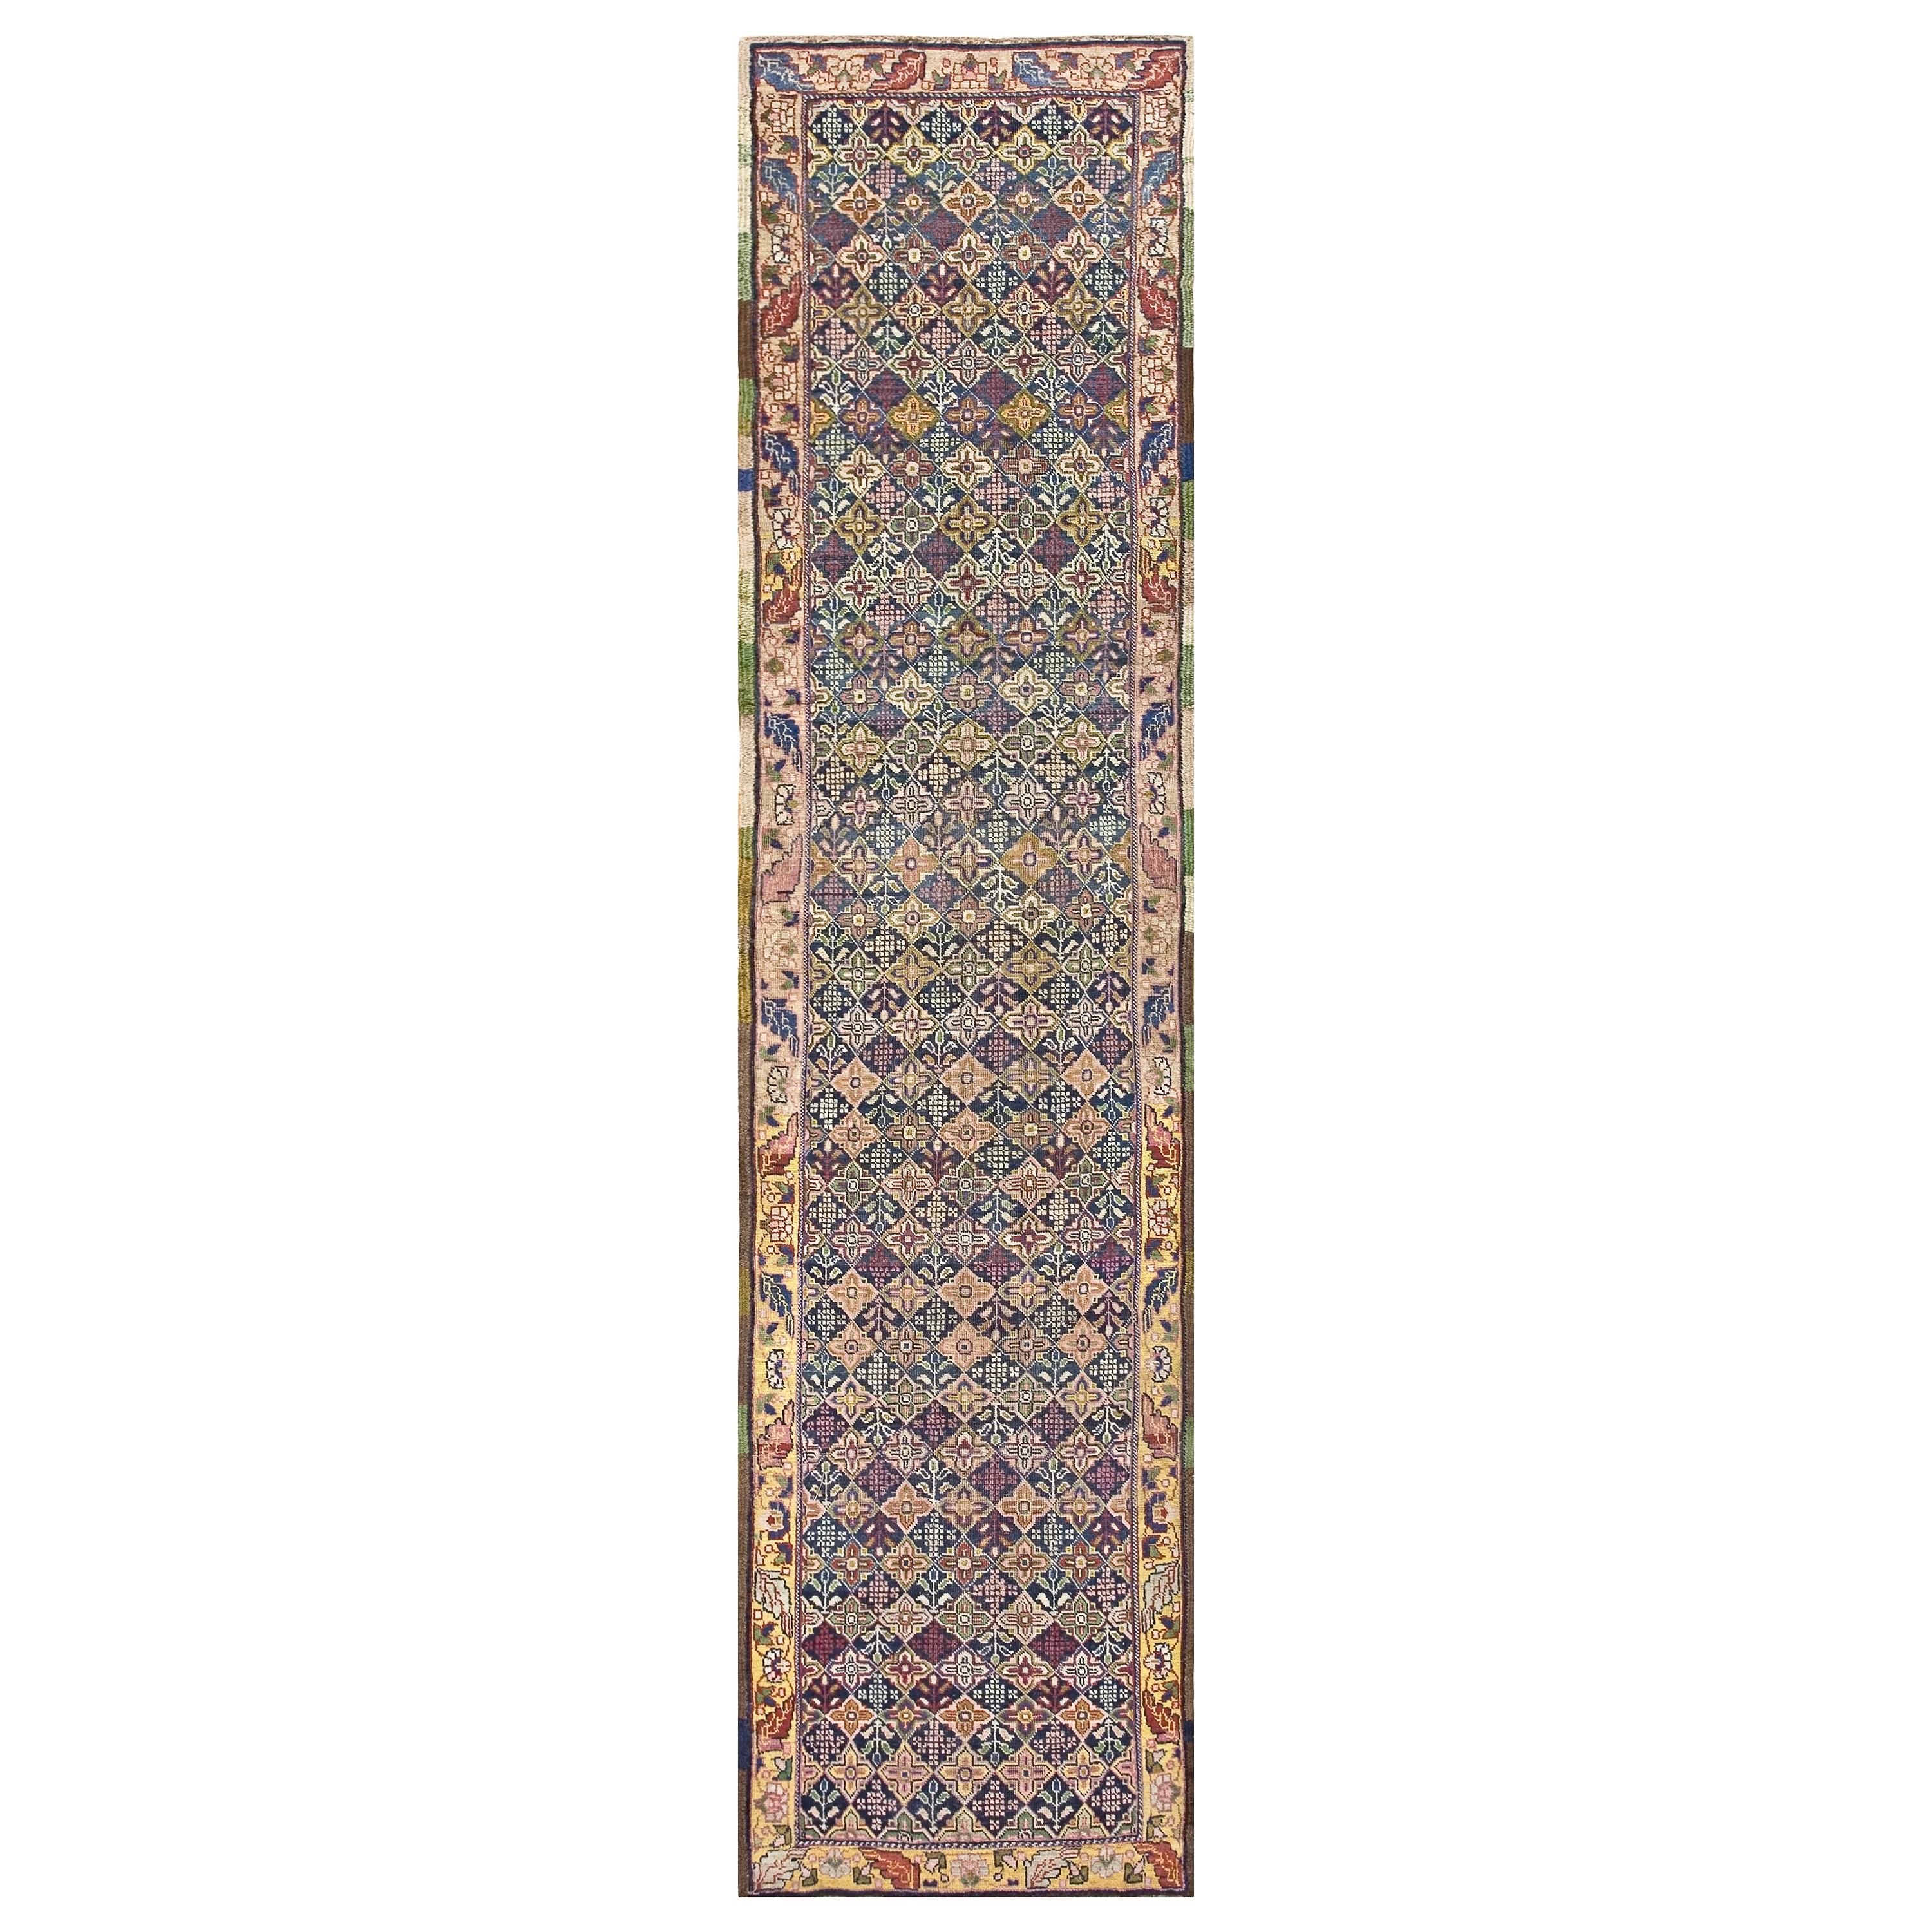 19th Century W. Persian Bijar Carpet ( 3'3" x 14'10" - 99 x 452 )